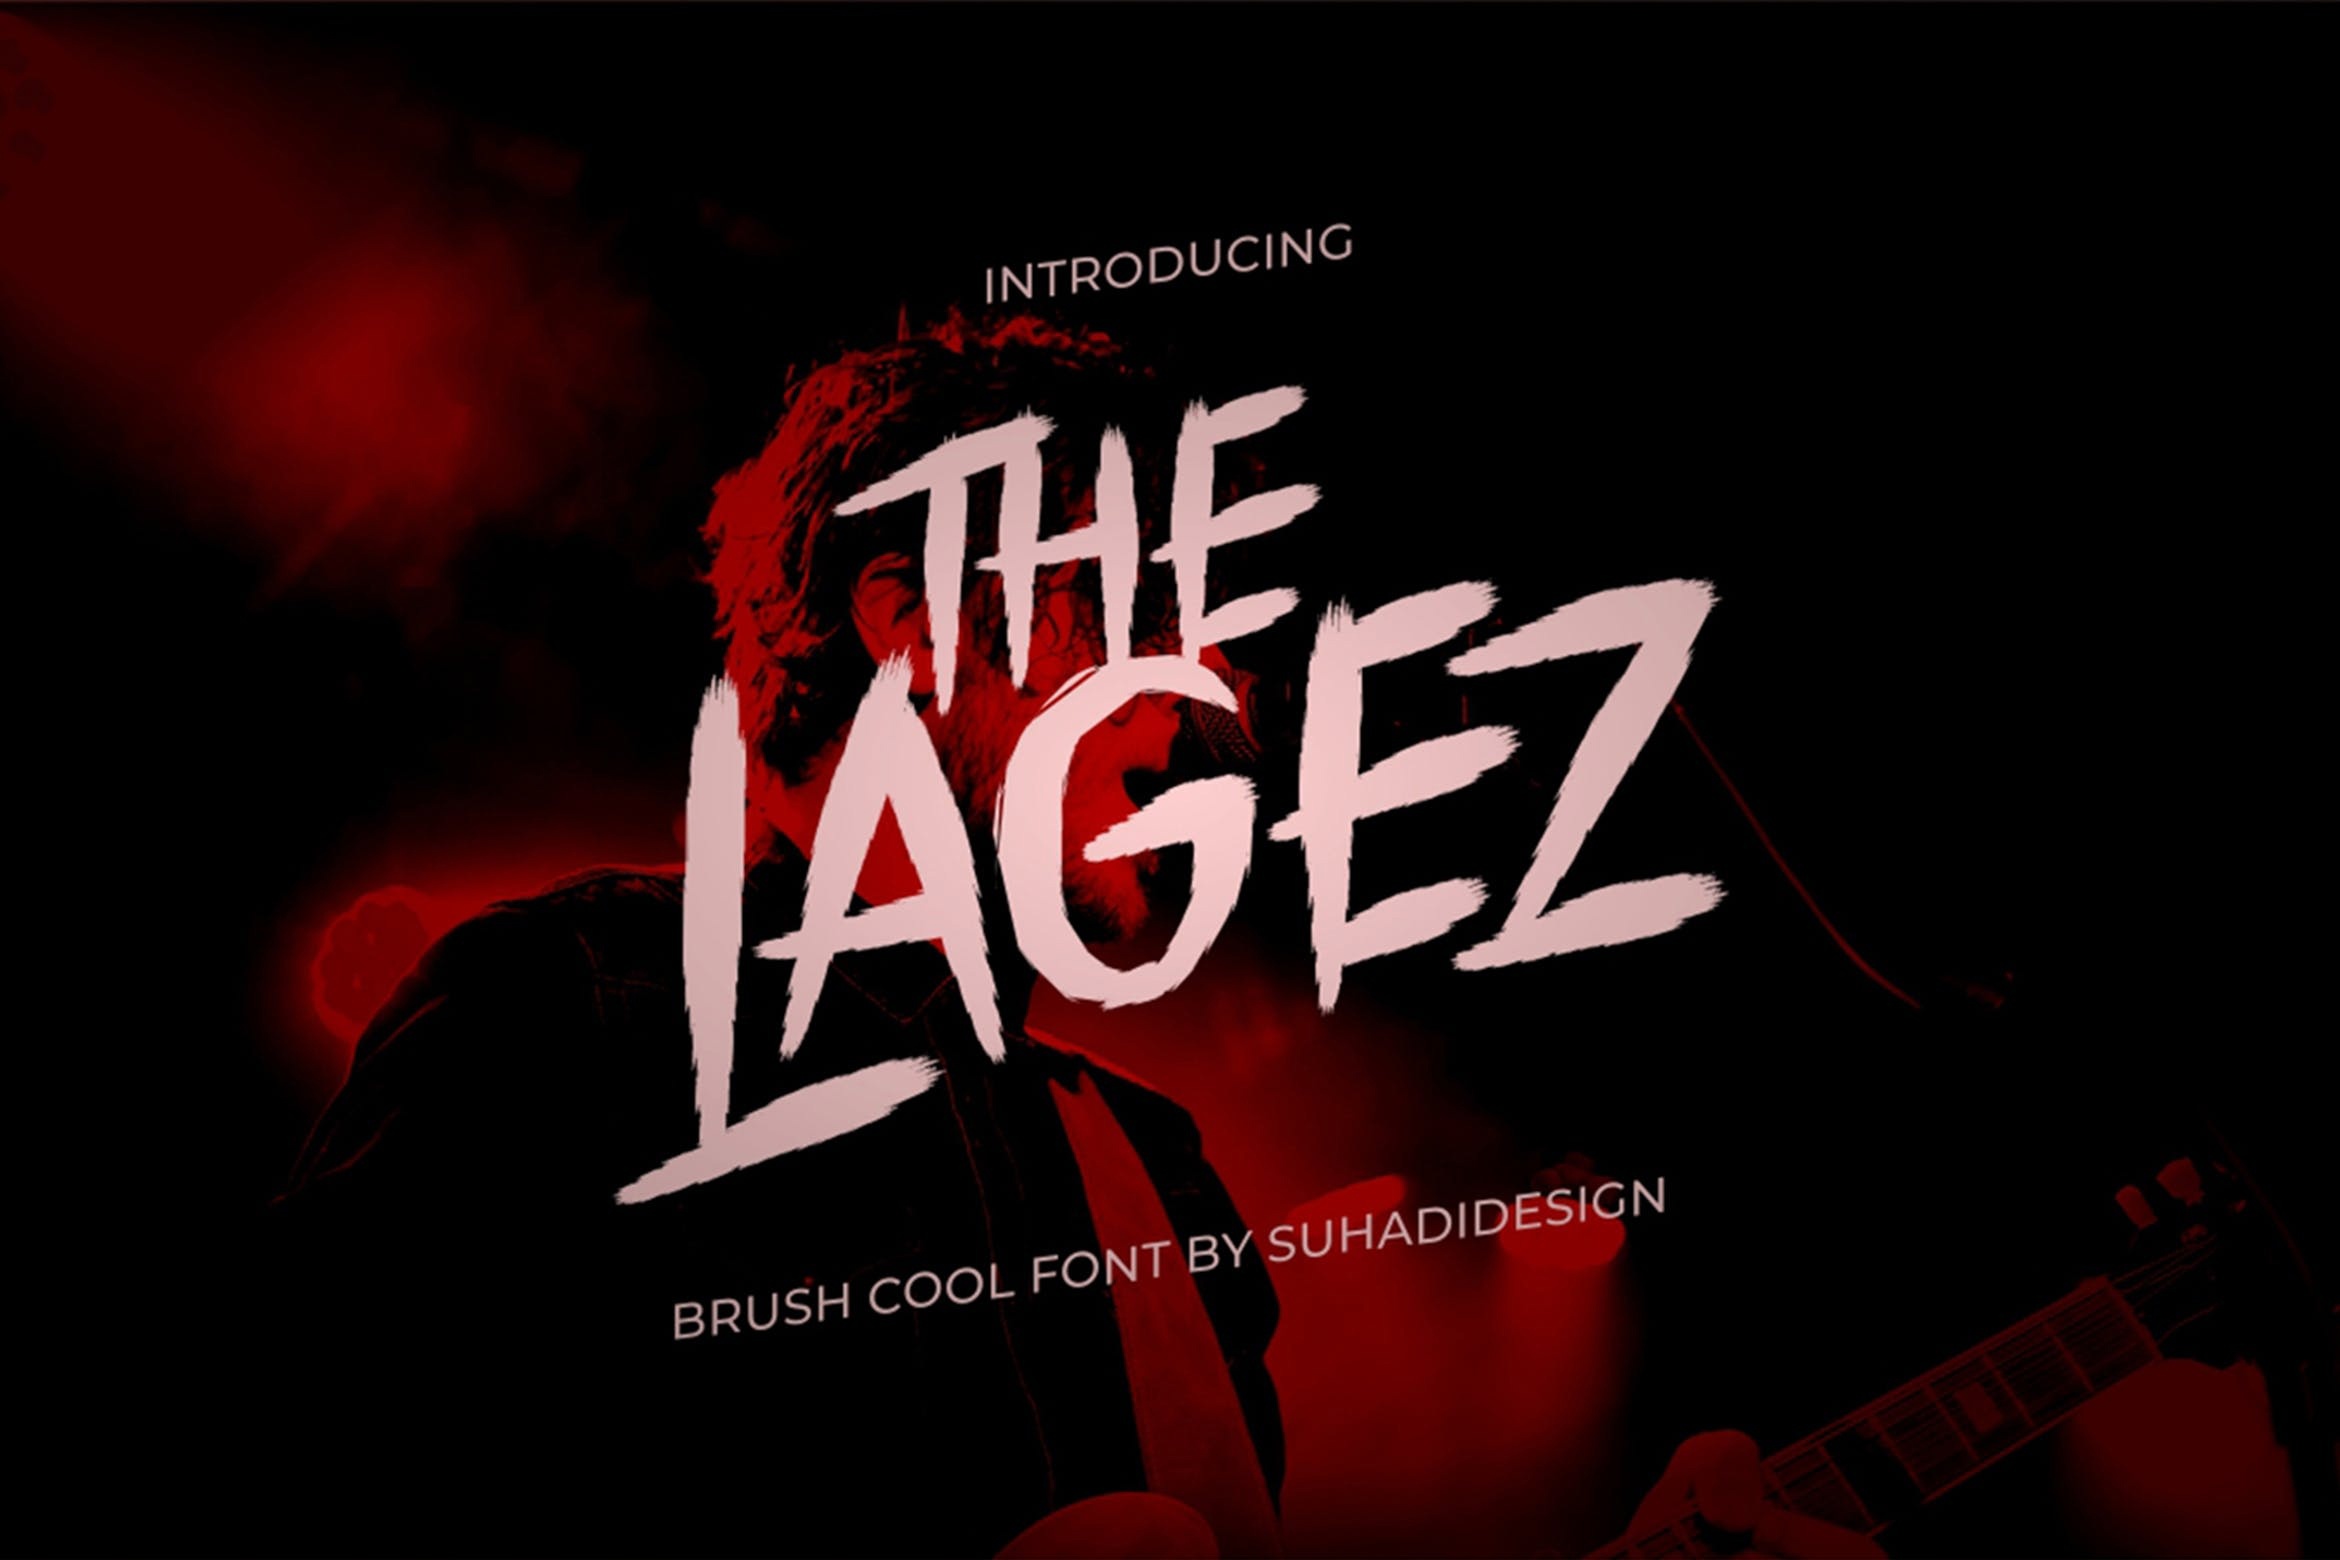 The Lagez